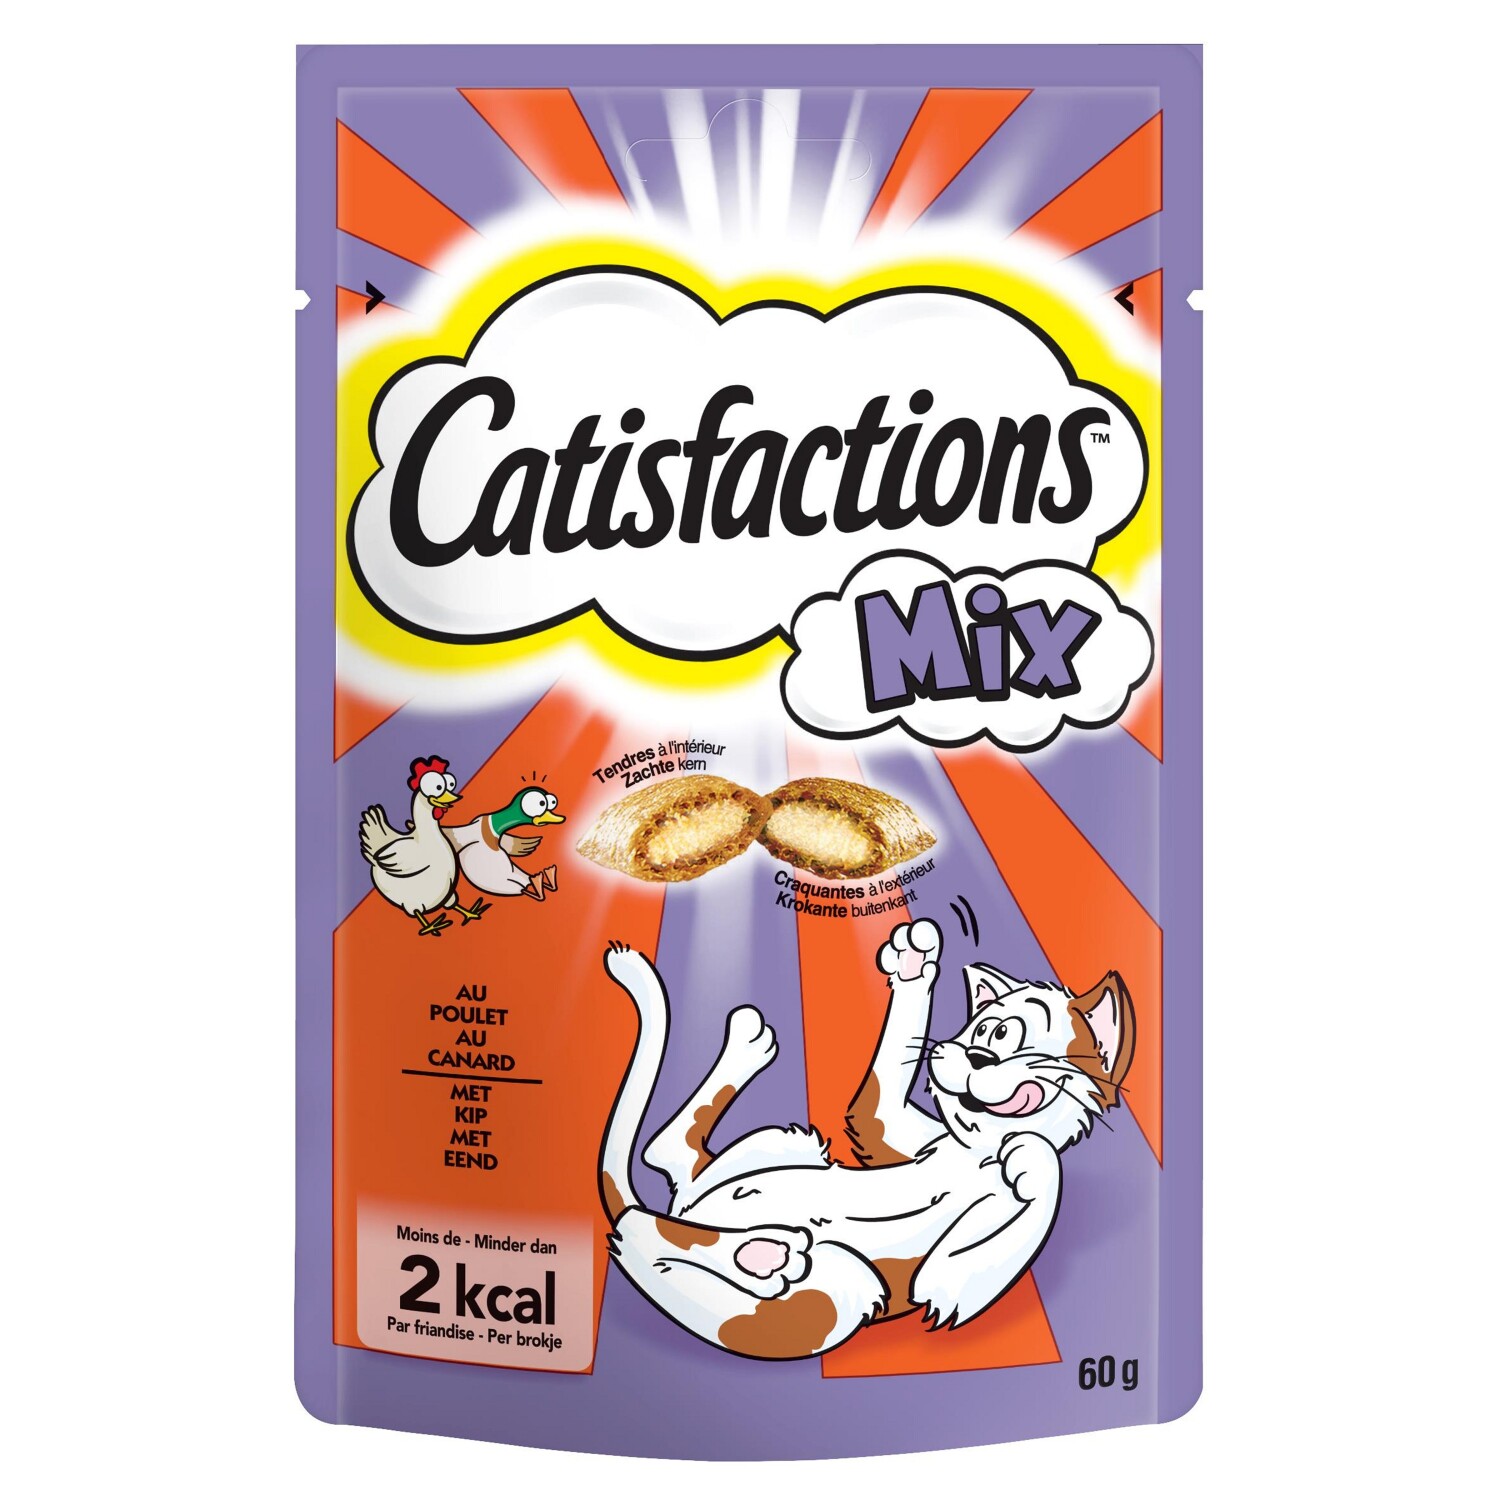 Afbeelding Catisfactions Mix Kip en Eend kattensnoep Per verpakking door Tuinadvies.be